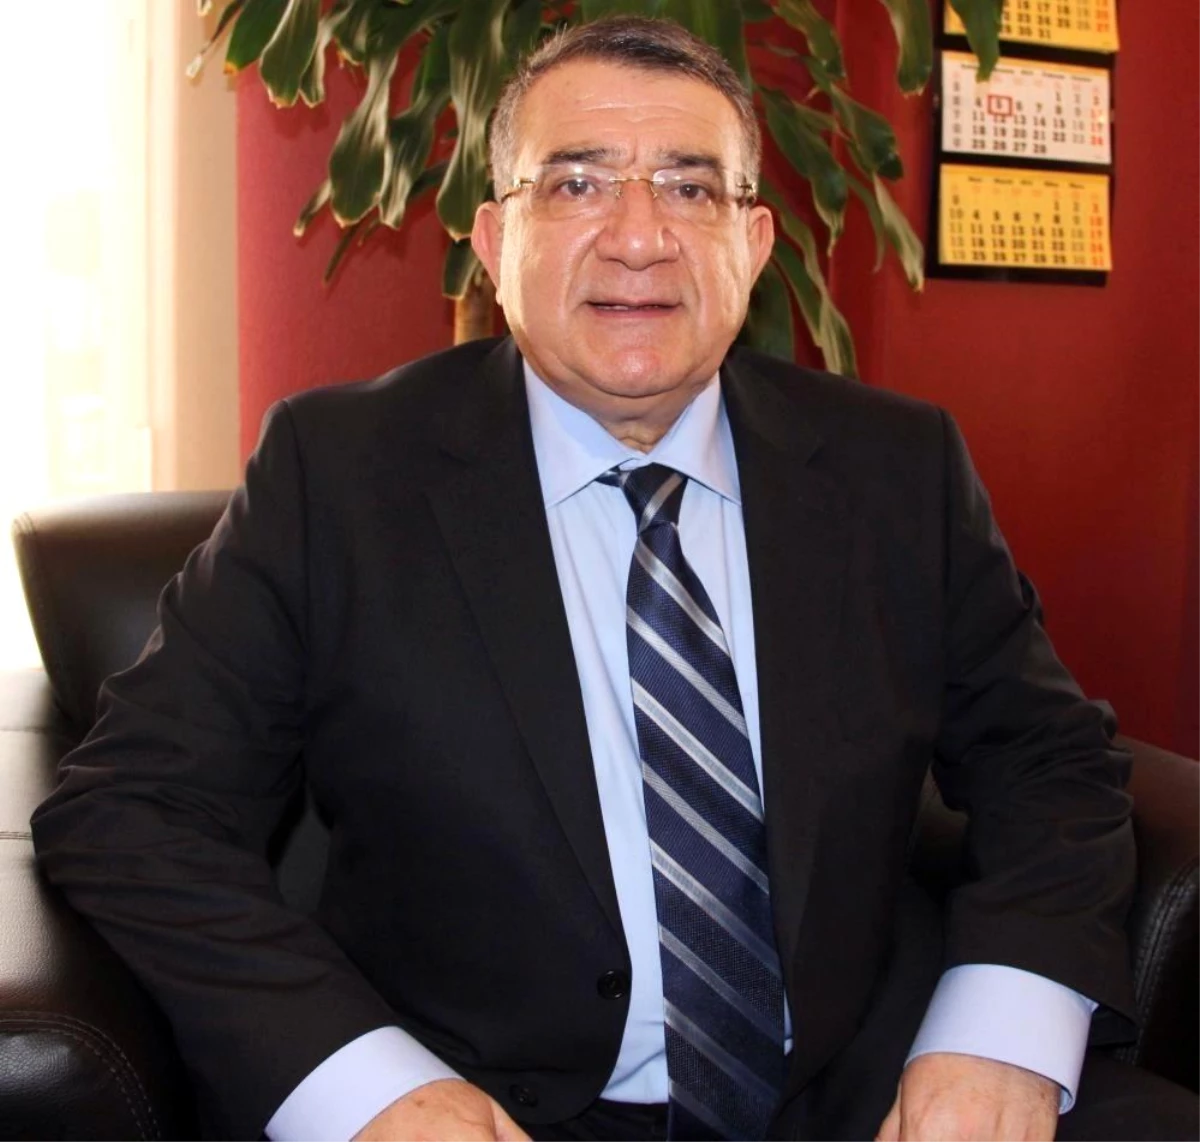 MTB Başkanı Özdemir: "Bakliyat, geleceğin gıdası"